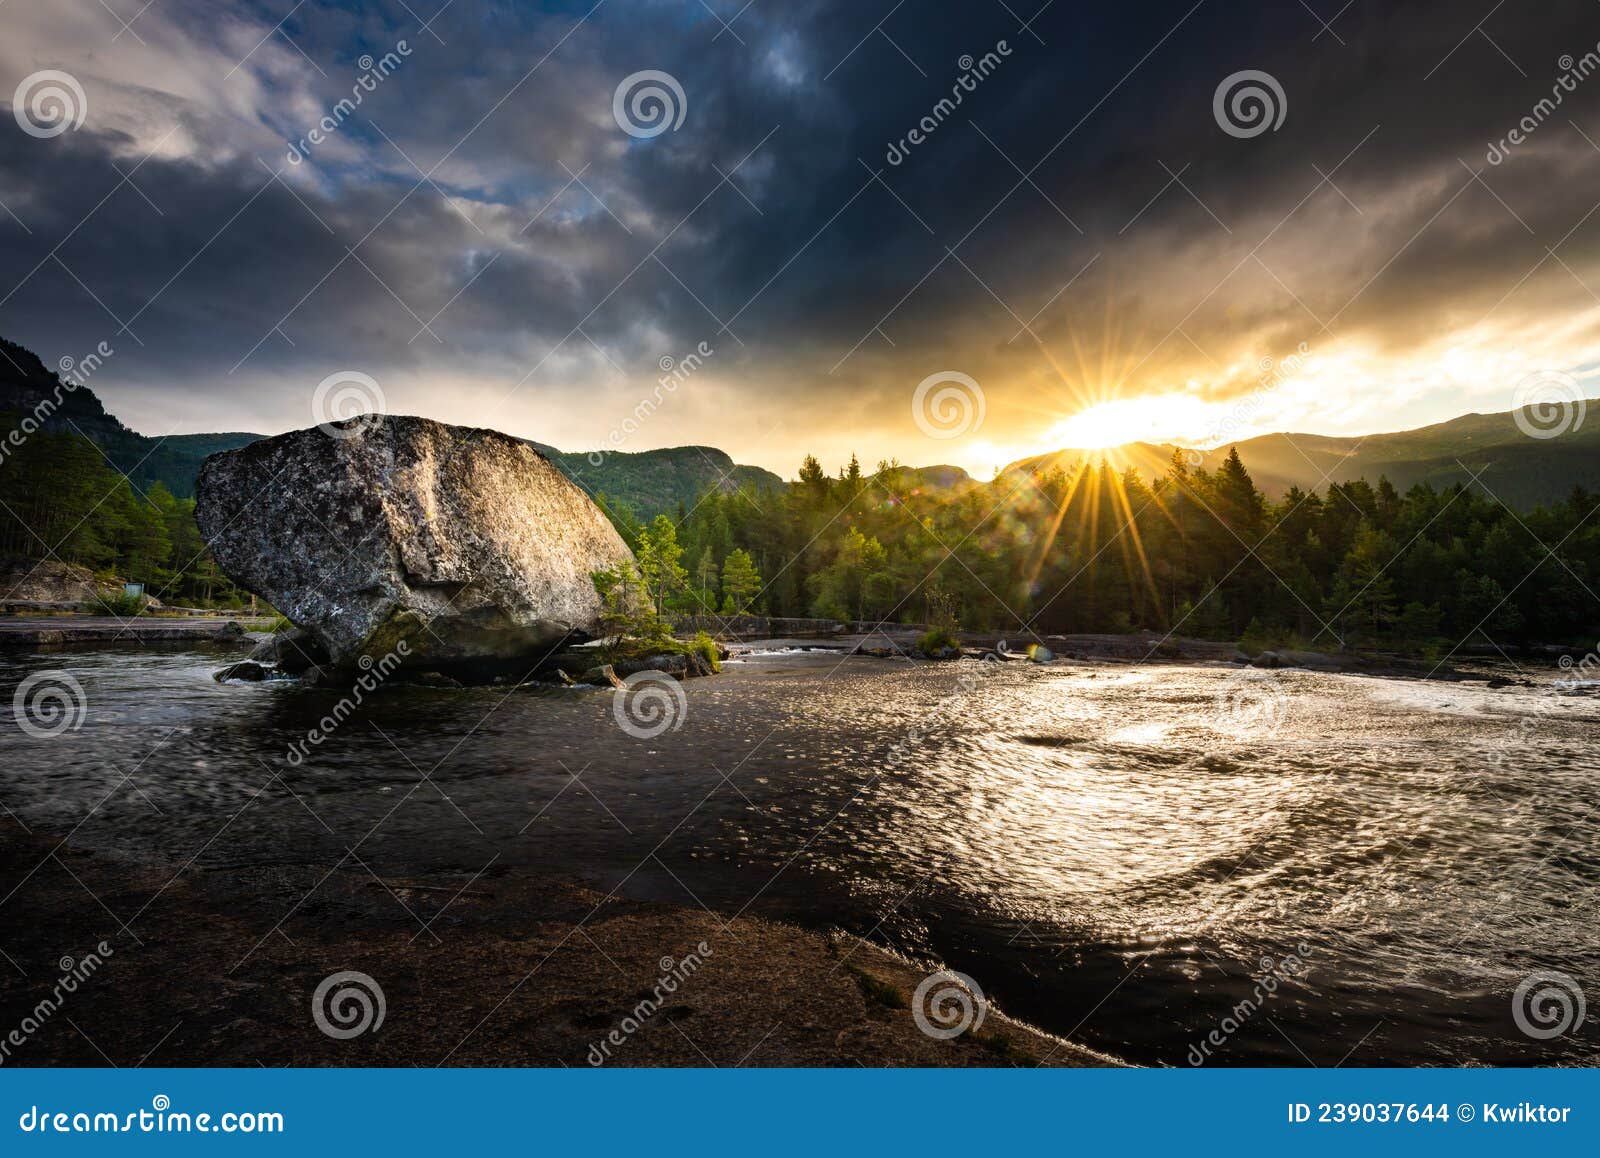 road trip rest stop large boulder in  otra river scandinavian landscape at sunrise, valle norway